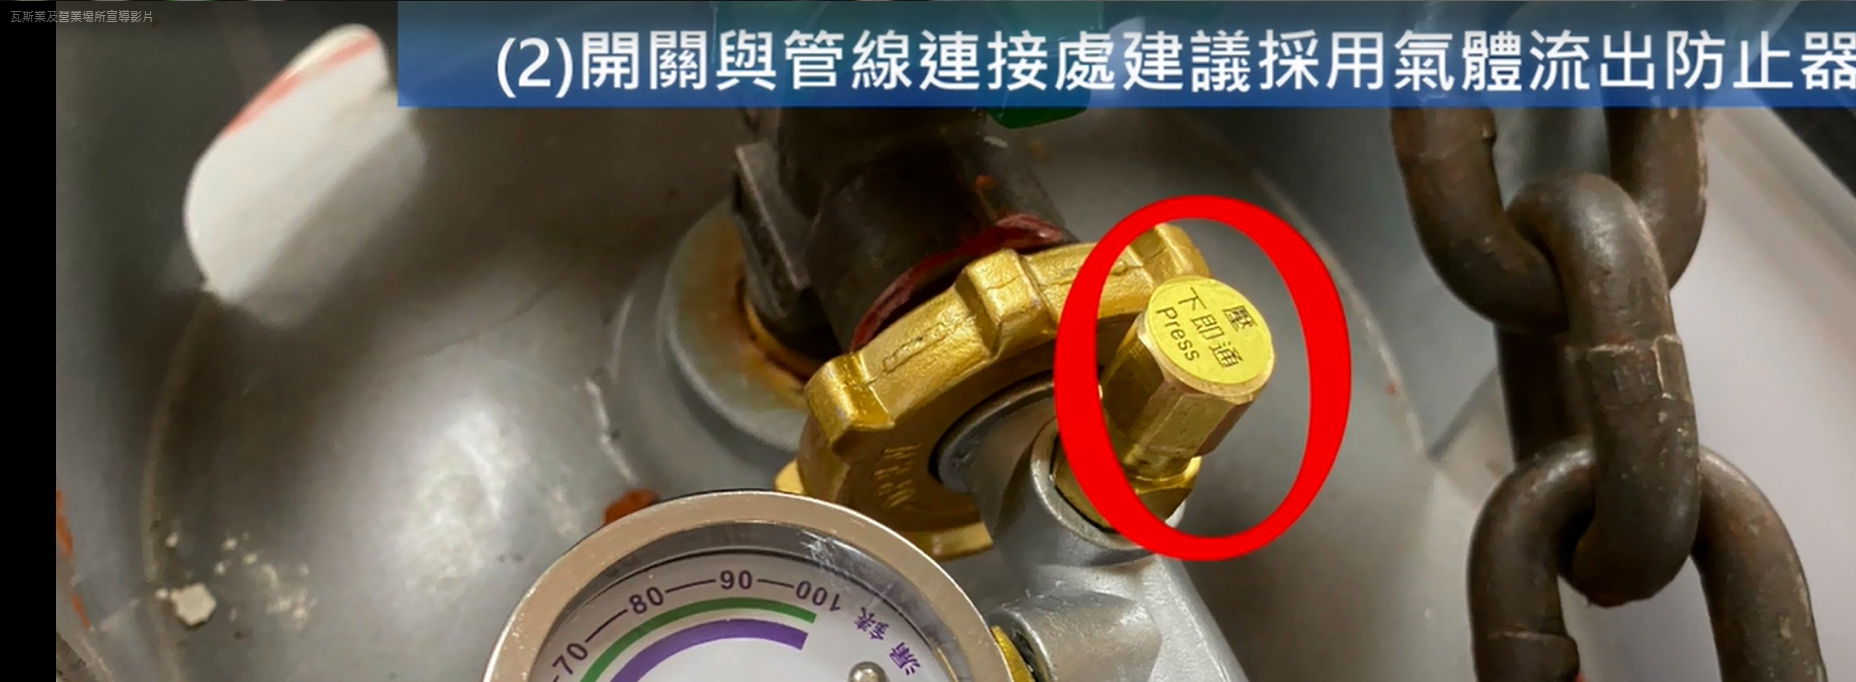 容器閥與管線間應採用氣體流出防止器。(記者陳信宏翻攝)